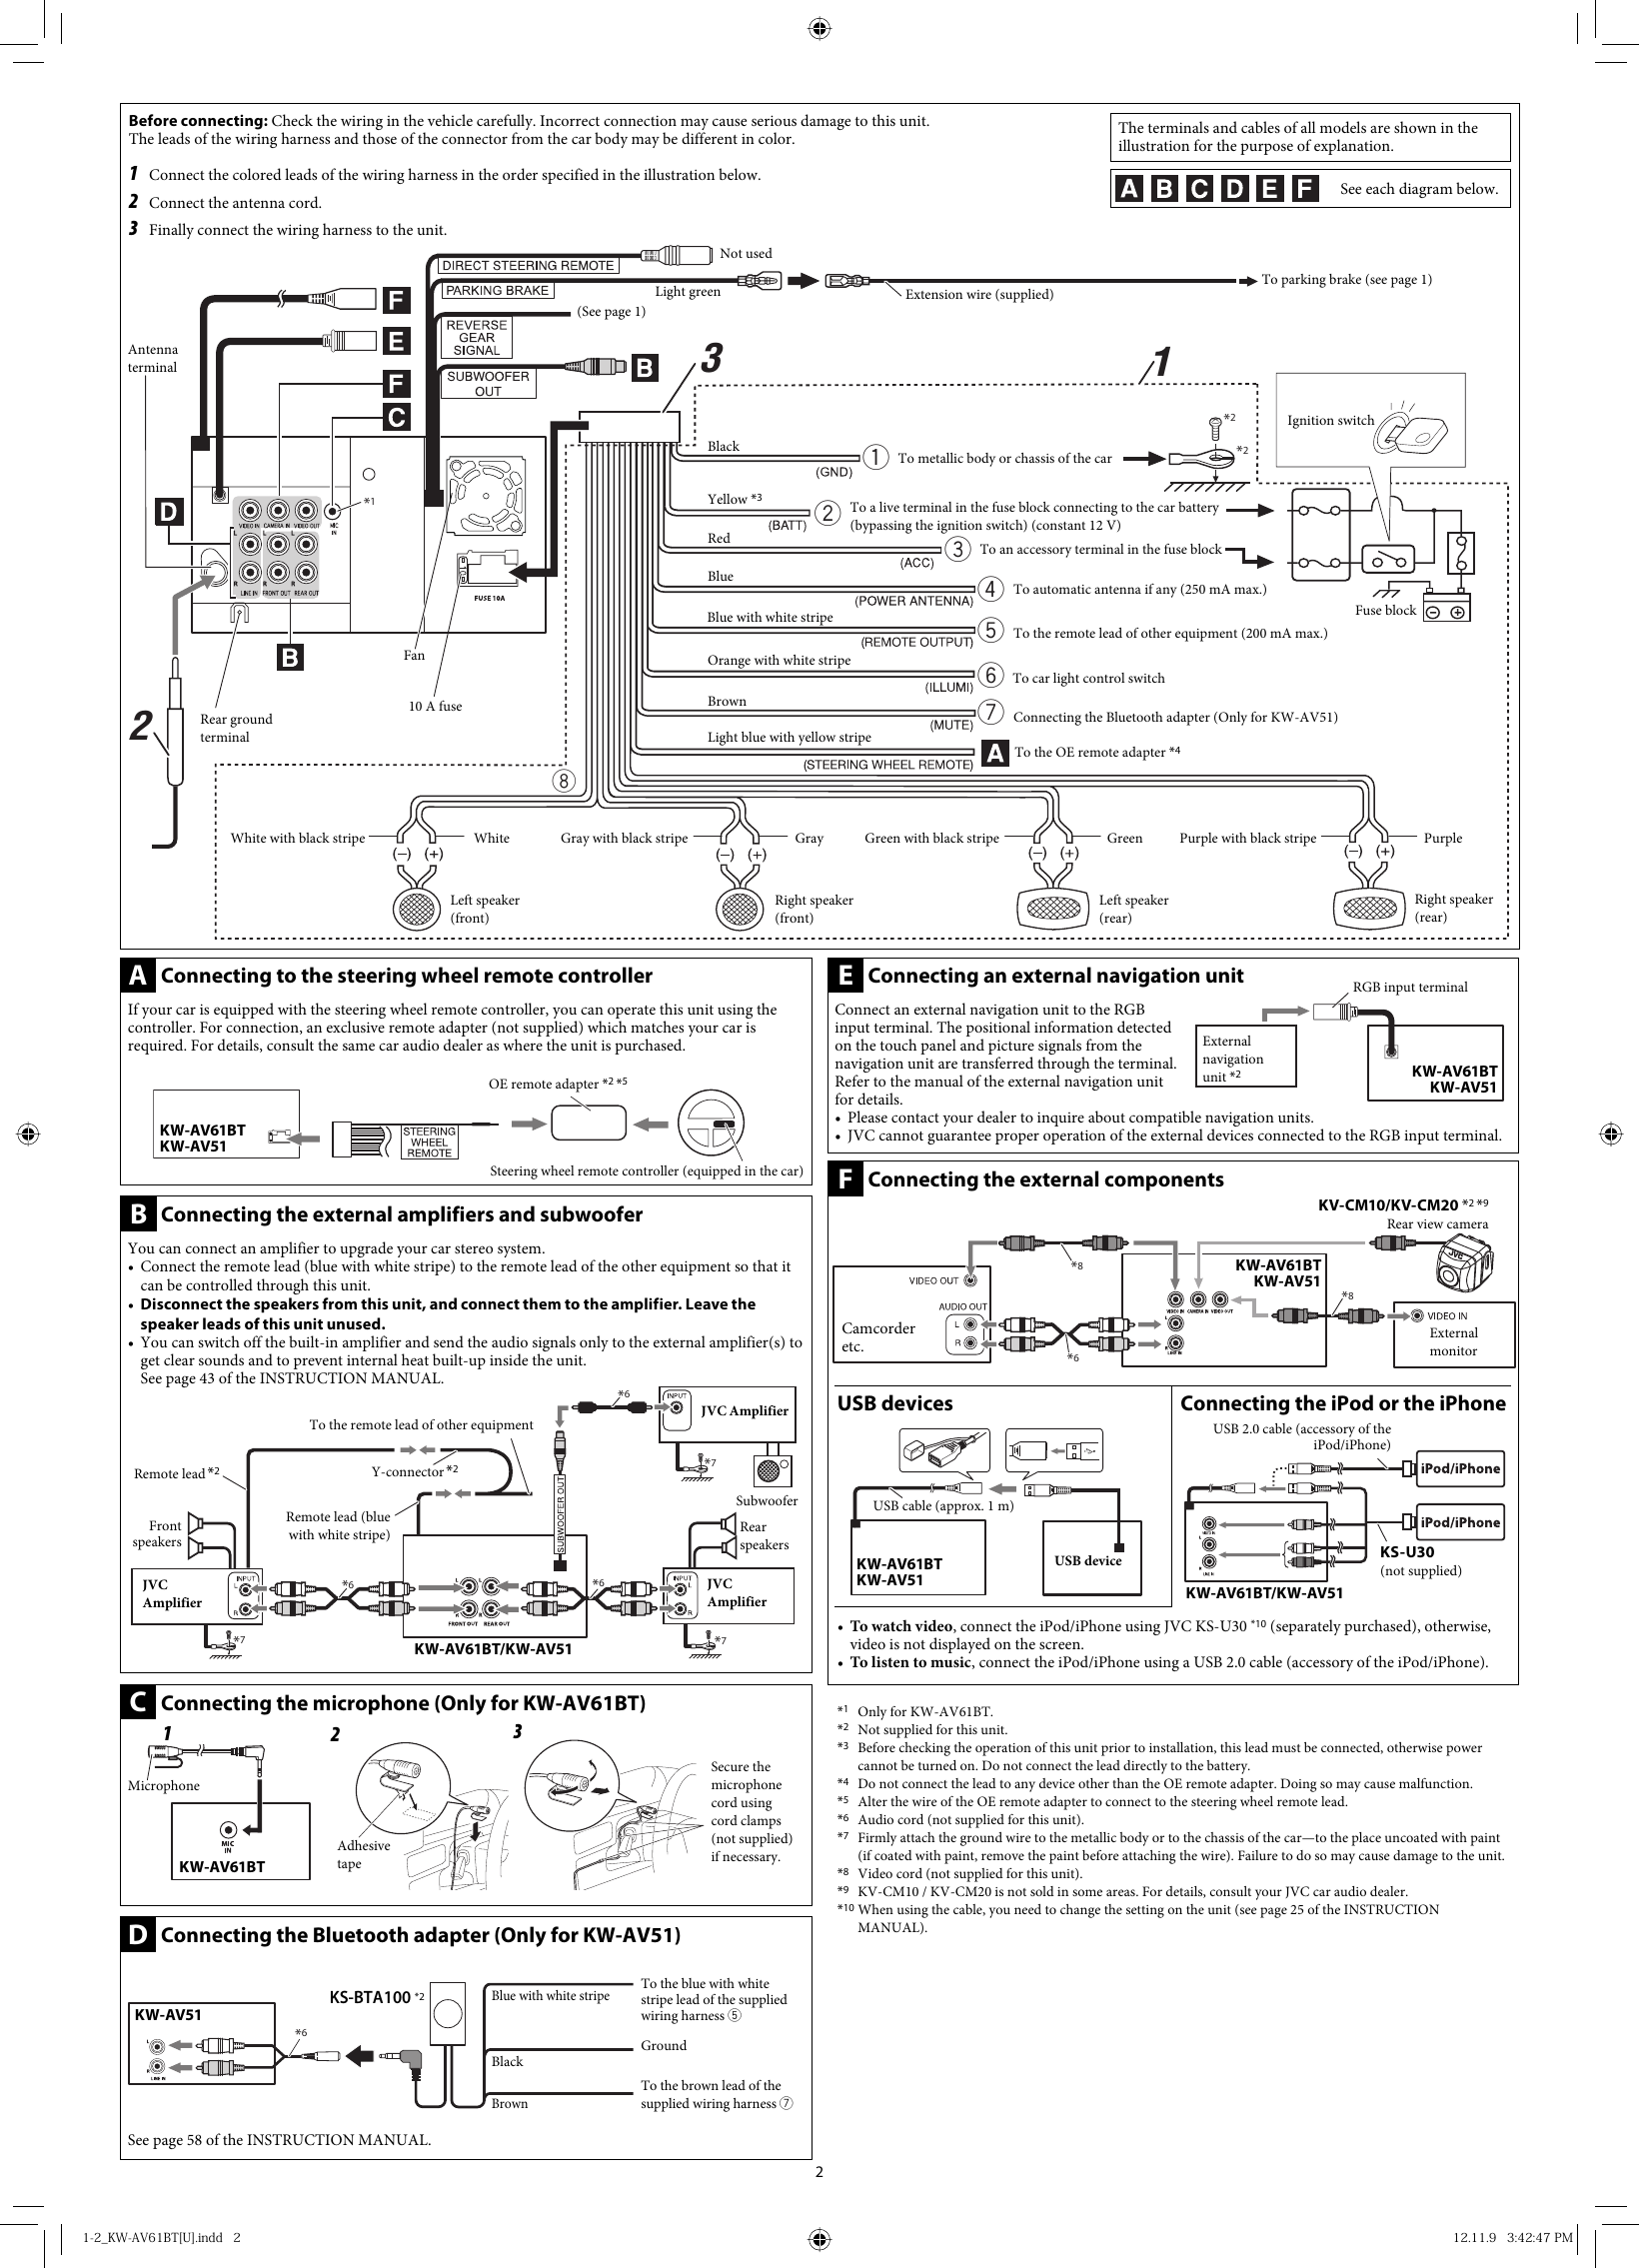 Page 2 of 6 - JVC KW-AV51U KW-AV61BT/KW-AV51[U] User Manual KW-AV51U, KW-AV61BTU GET0888-002A